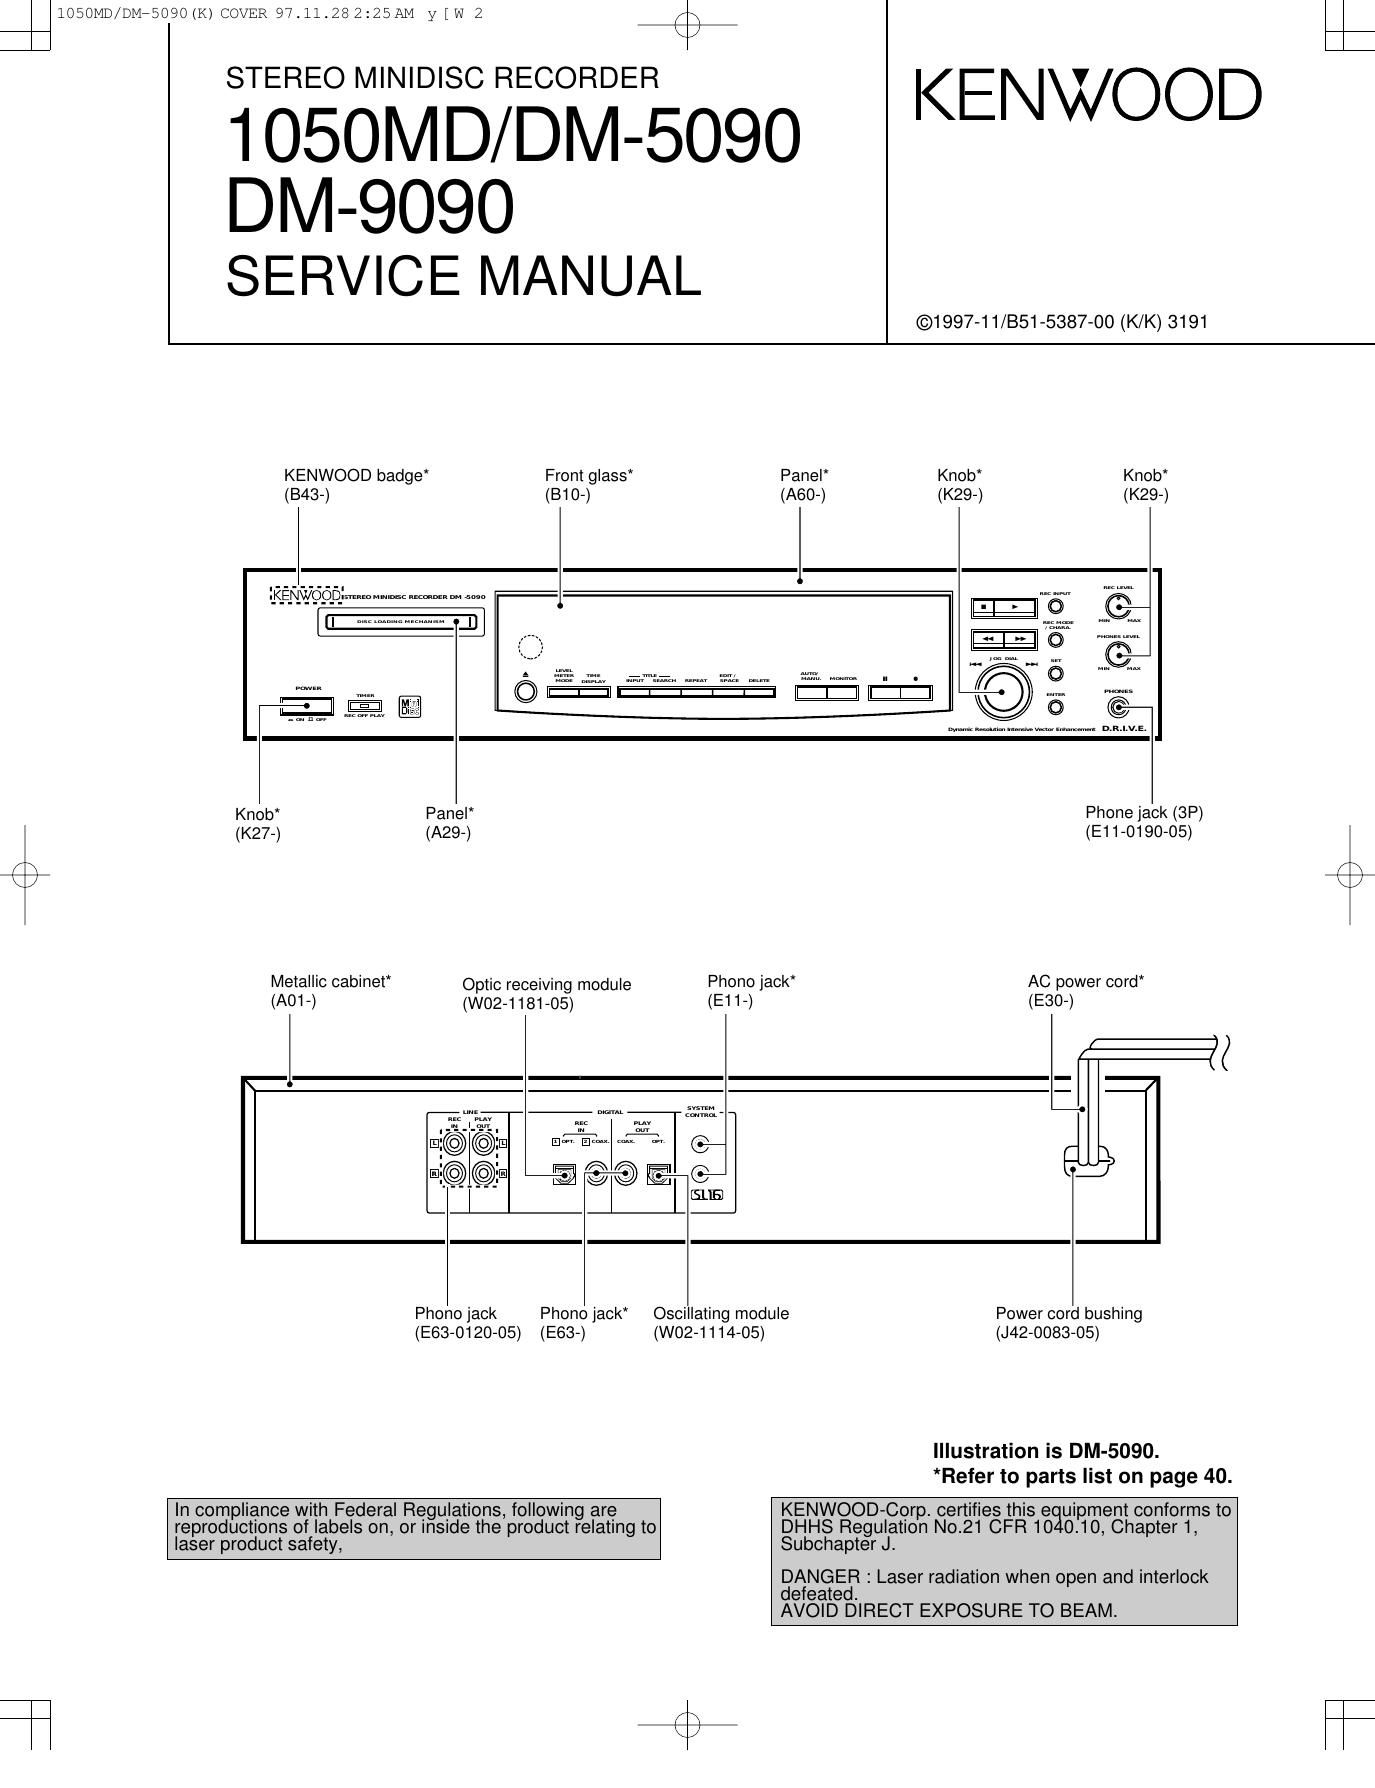 Kenwood DM 5090 Service Manual